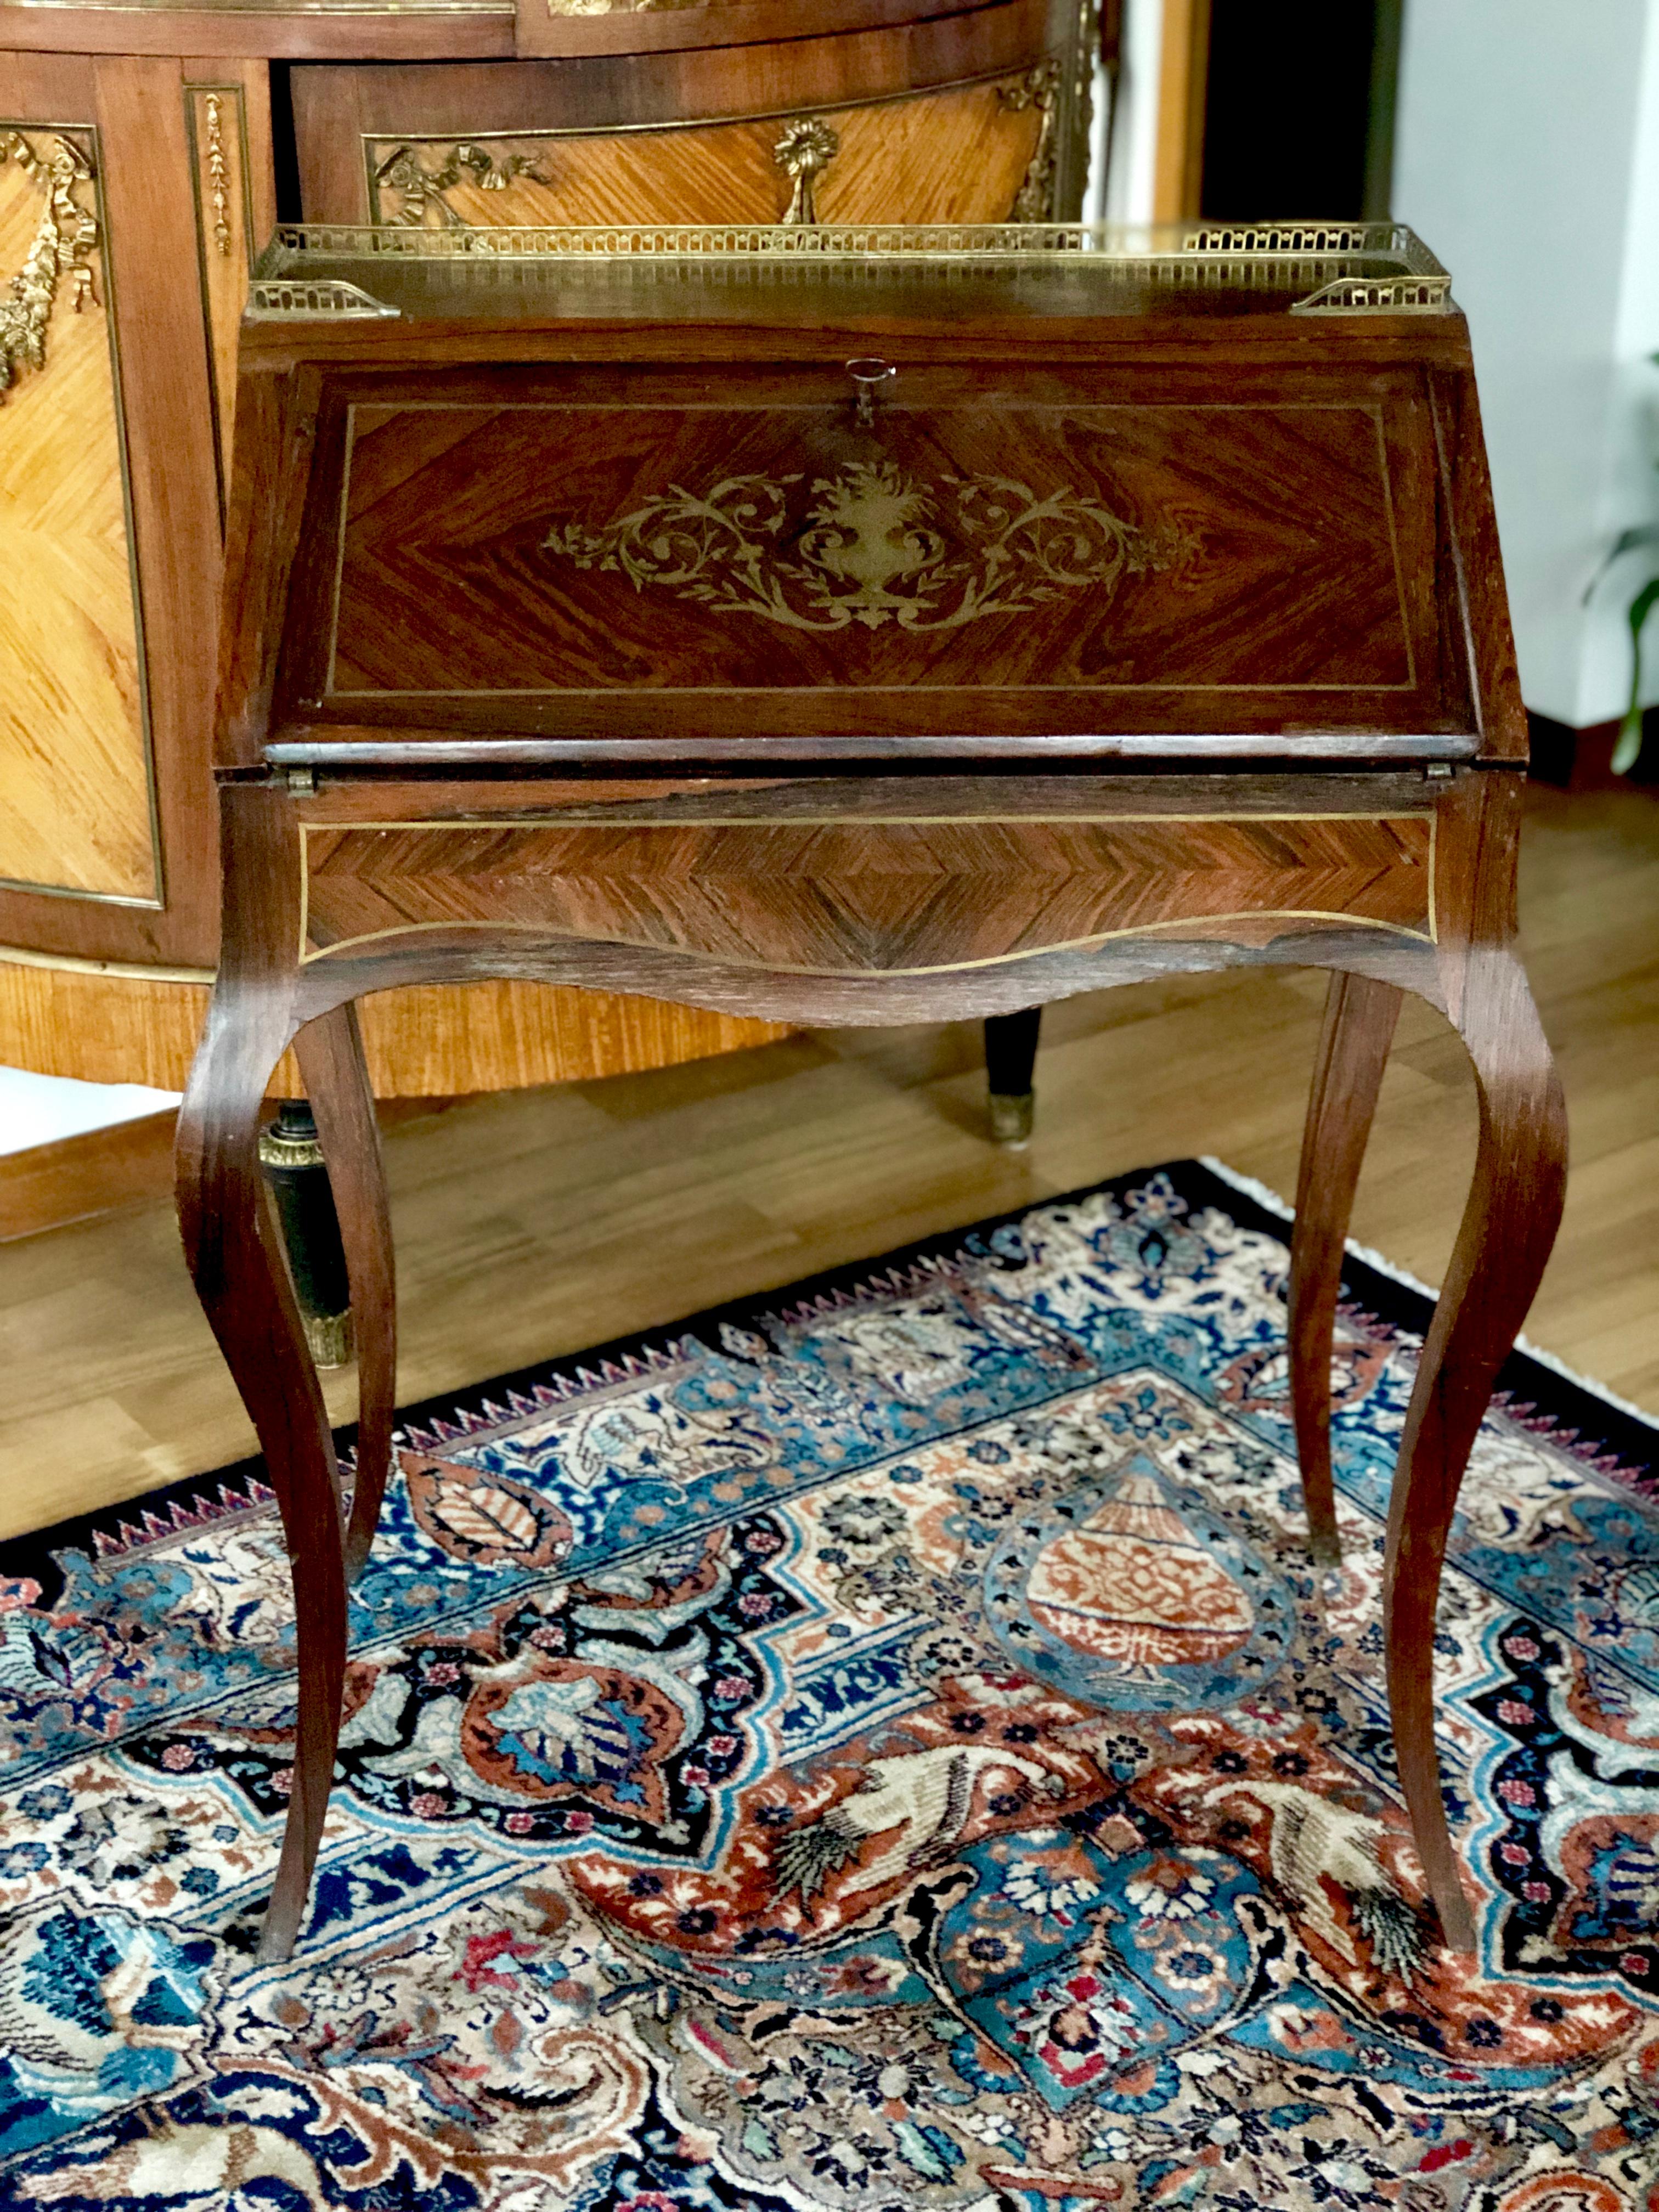 Dies ist eine schöne antike Französisch Mahagoni Intarsien Damen Schreibtisch aus ca. 1890. Die Klappe lässt sich öffnen und gibt den Blick auf eine lederne Schreibfläche und drei Schubladen frei. Der Deckel ist mit Messing umrandet. Die Kommode